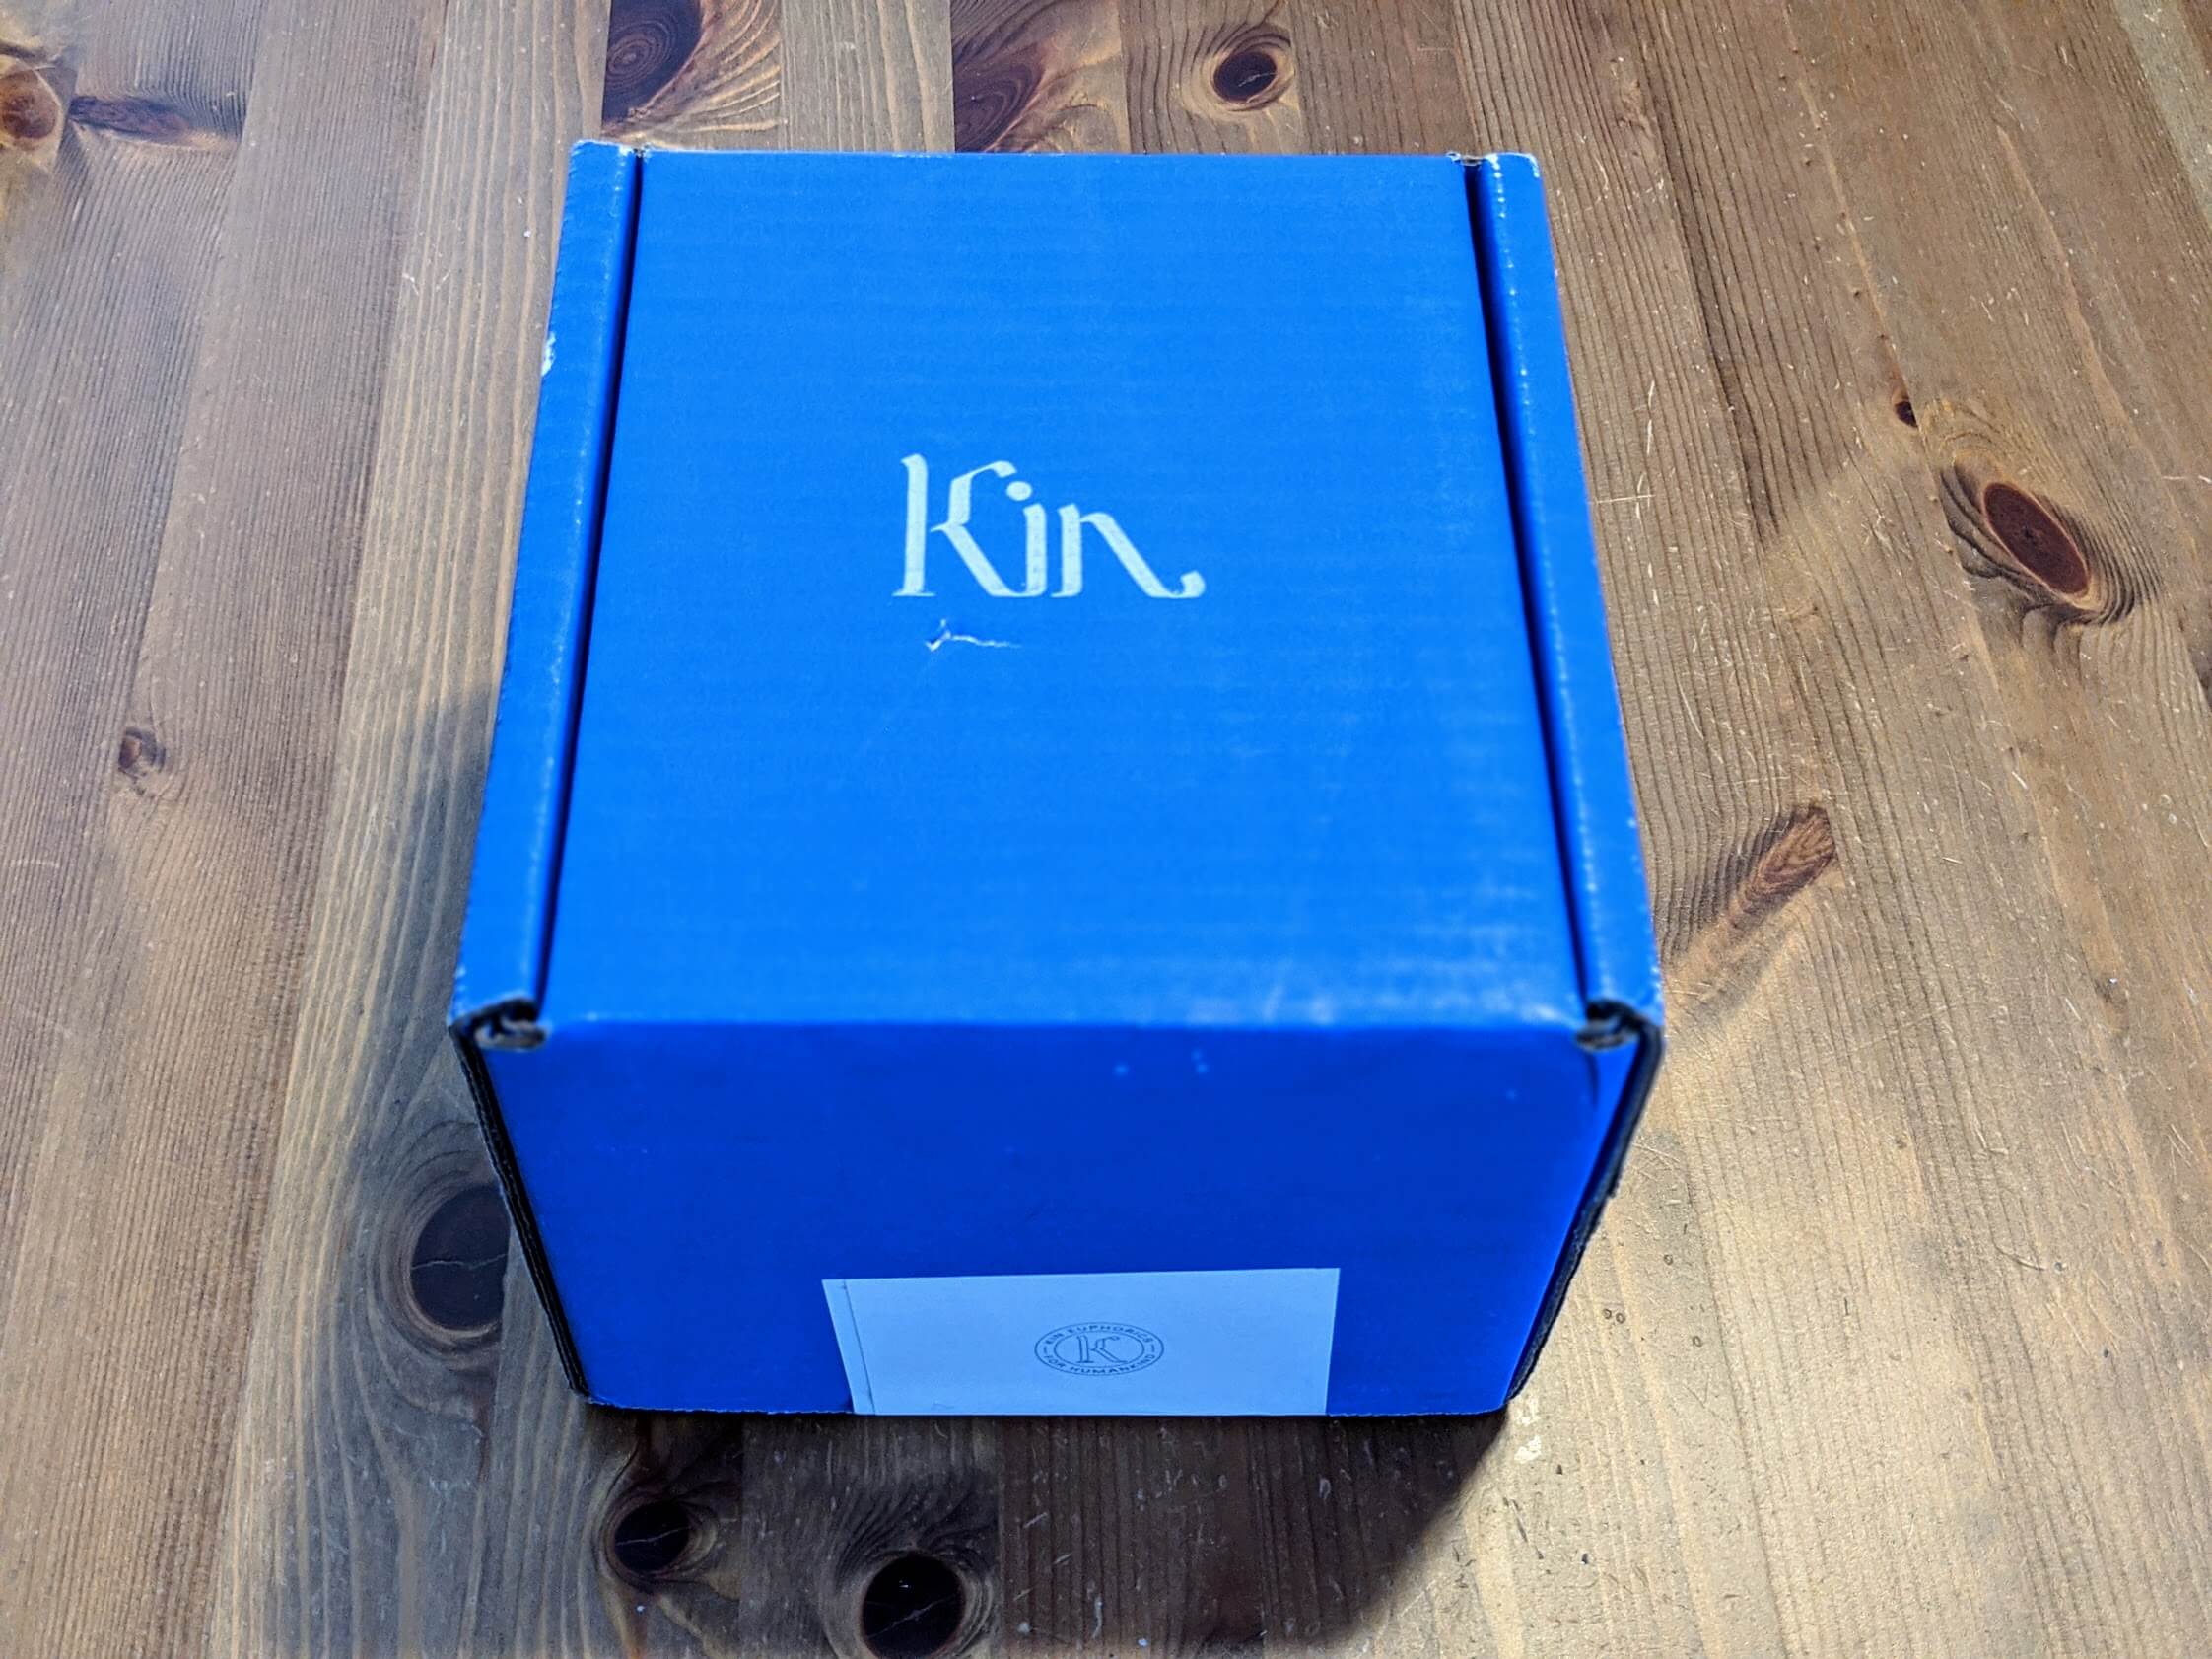 kin box